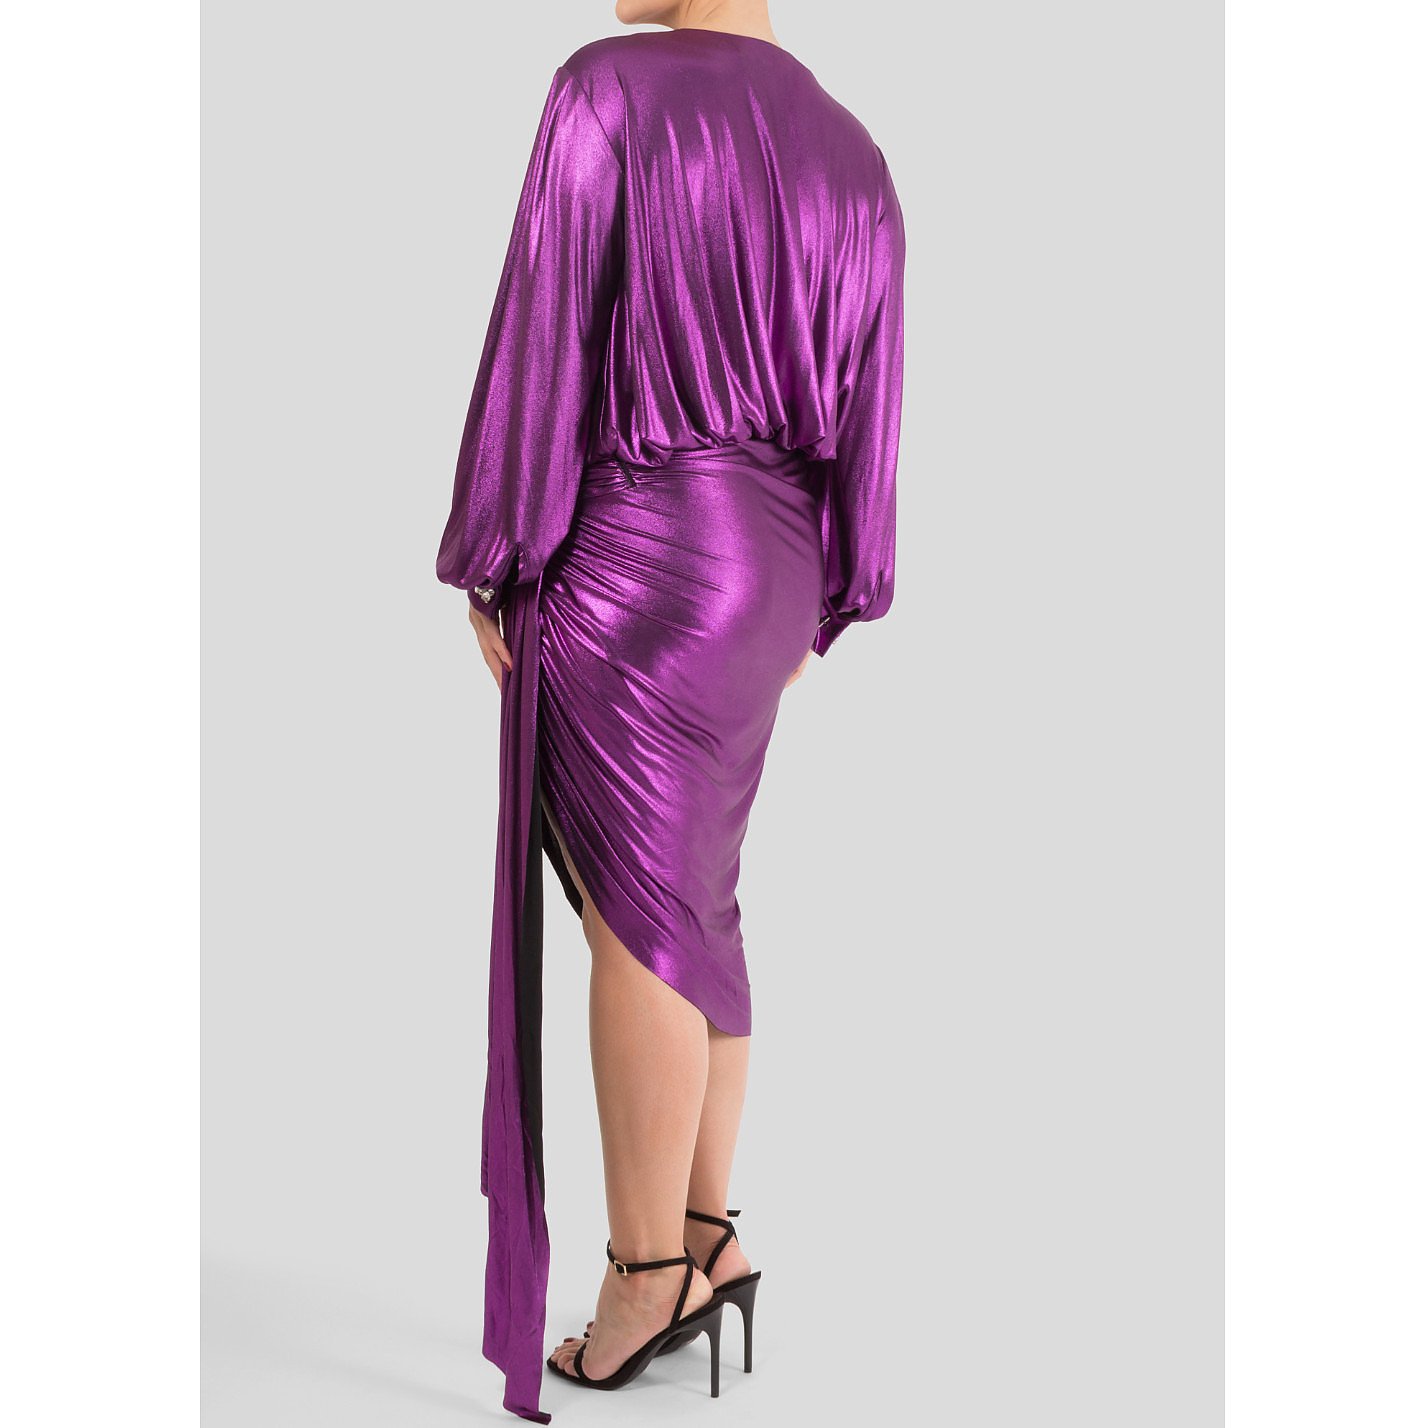 alexandre vauthier purple dress